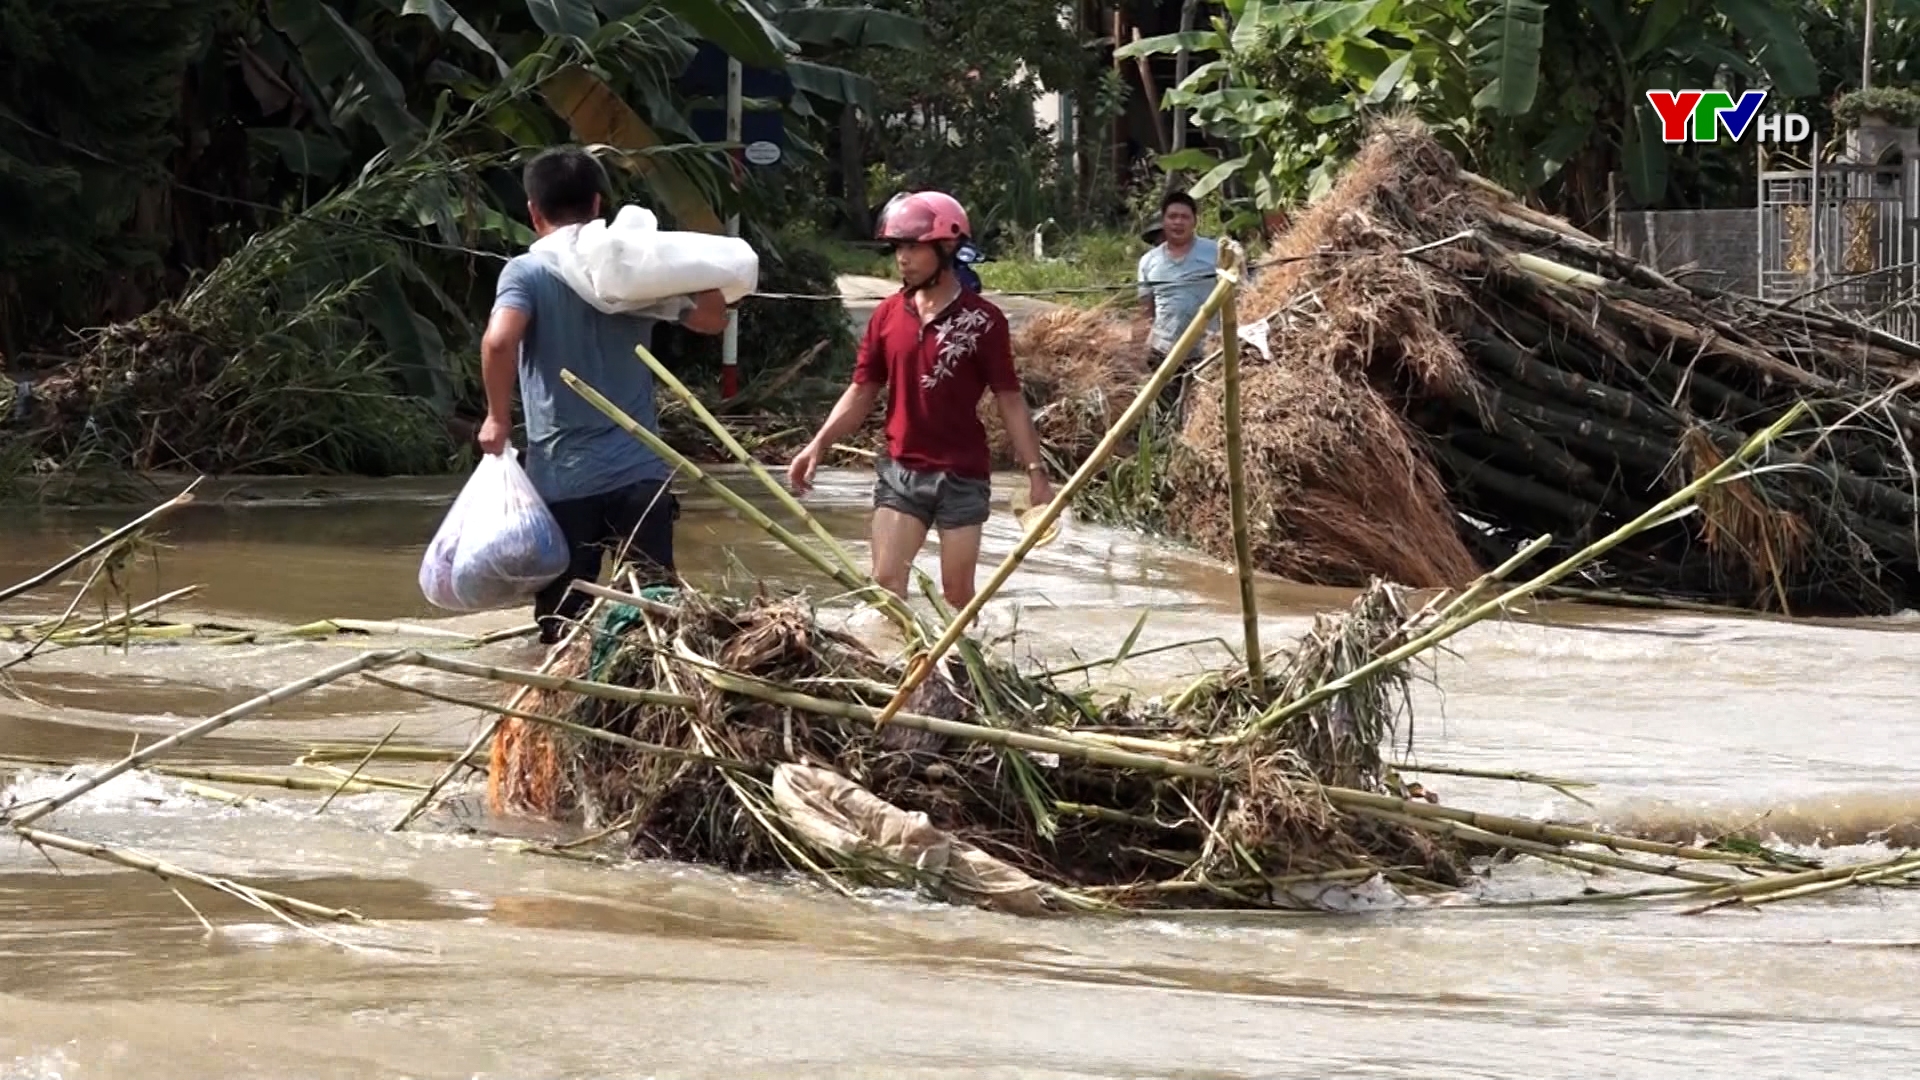 Huyện Lục Yên: Khoảng 1 nghìn hộ dân sống trong vùng nguy hiểm bởi thiên tai